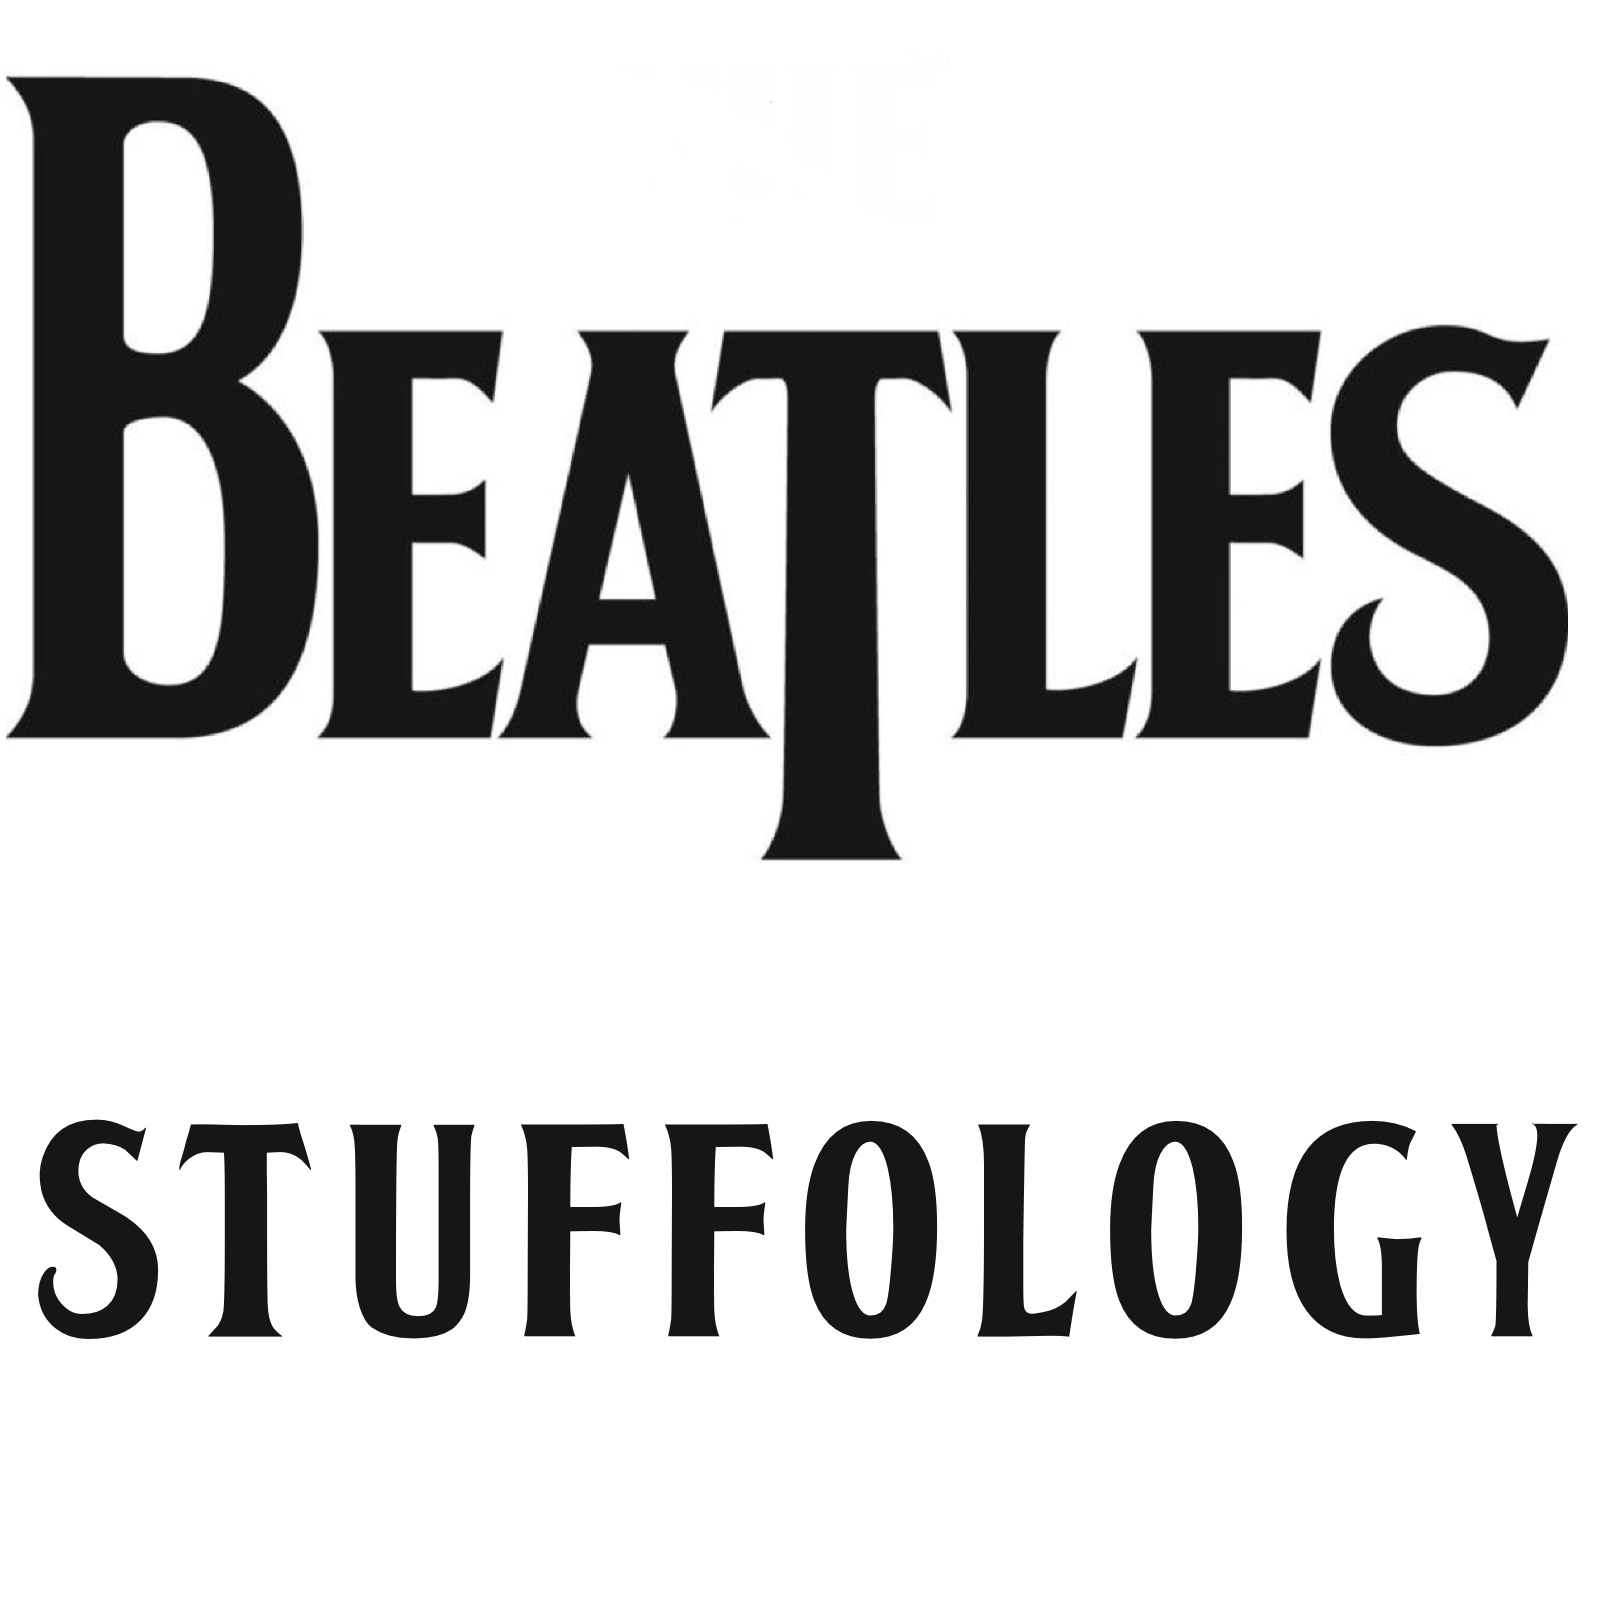 Beatles Stuffology